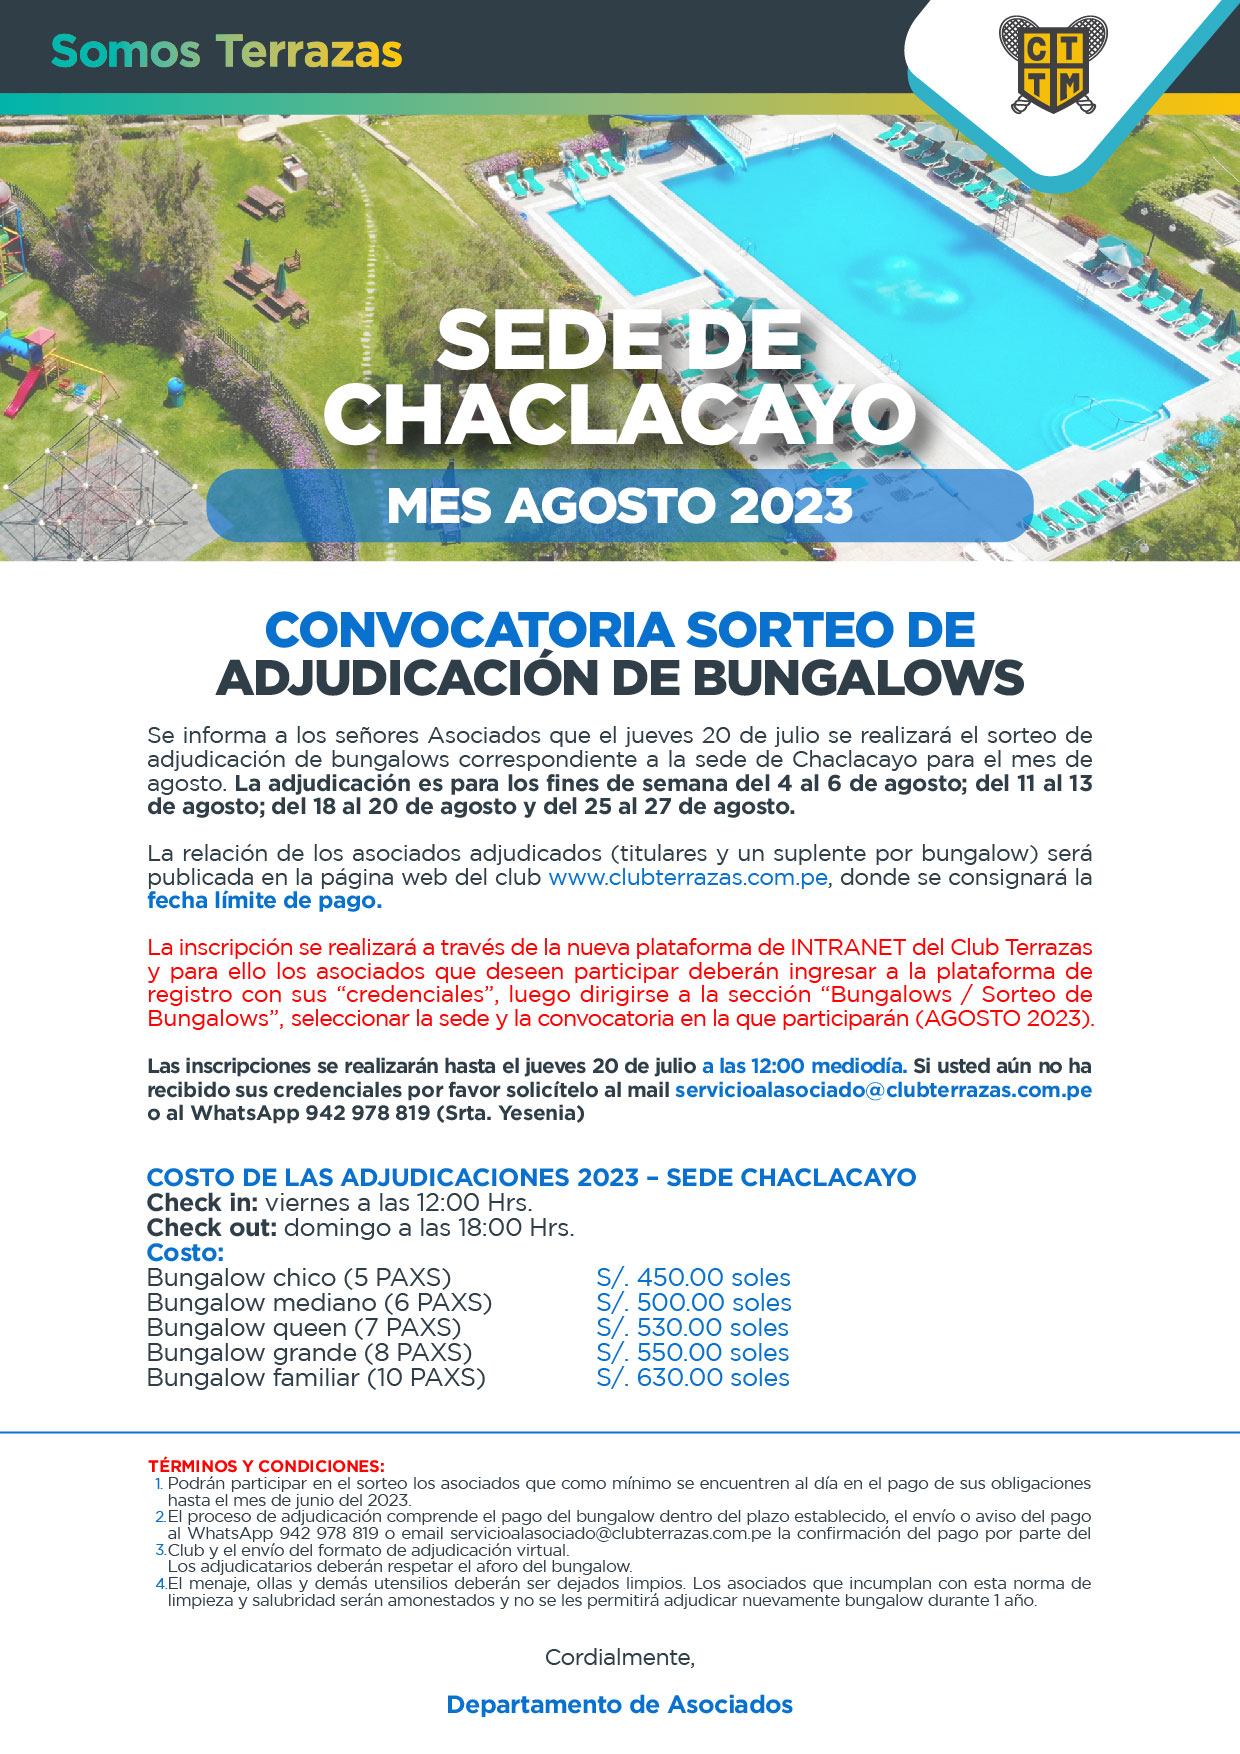 CONVOCATORIA AL SORTEO DE ADJUDICACIÓN DE BUNGALOWS:MES AGOSTO 2023 - SEDE DE CHACLACAYO 